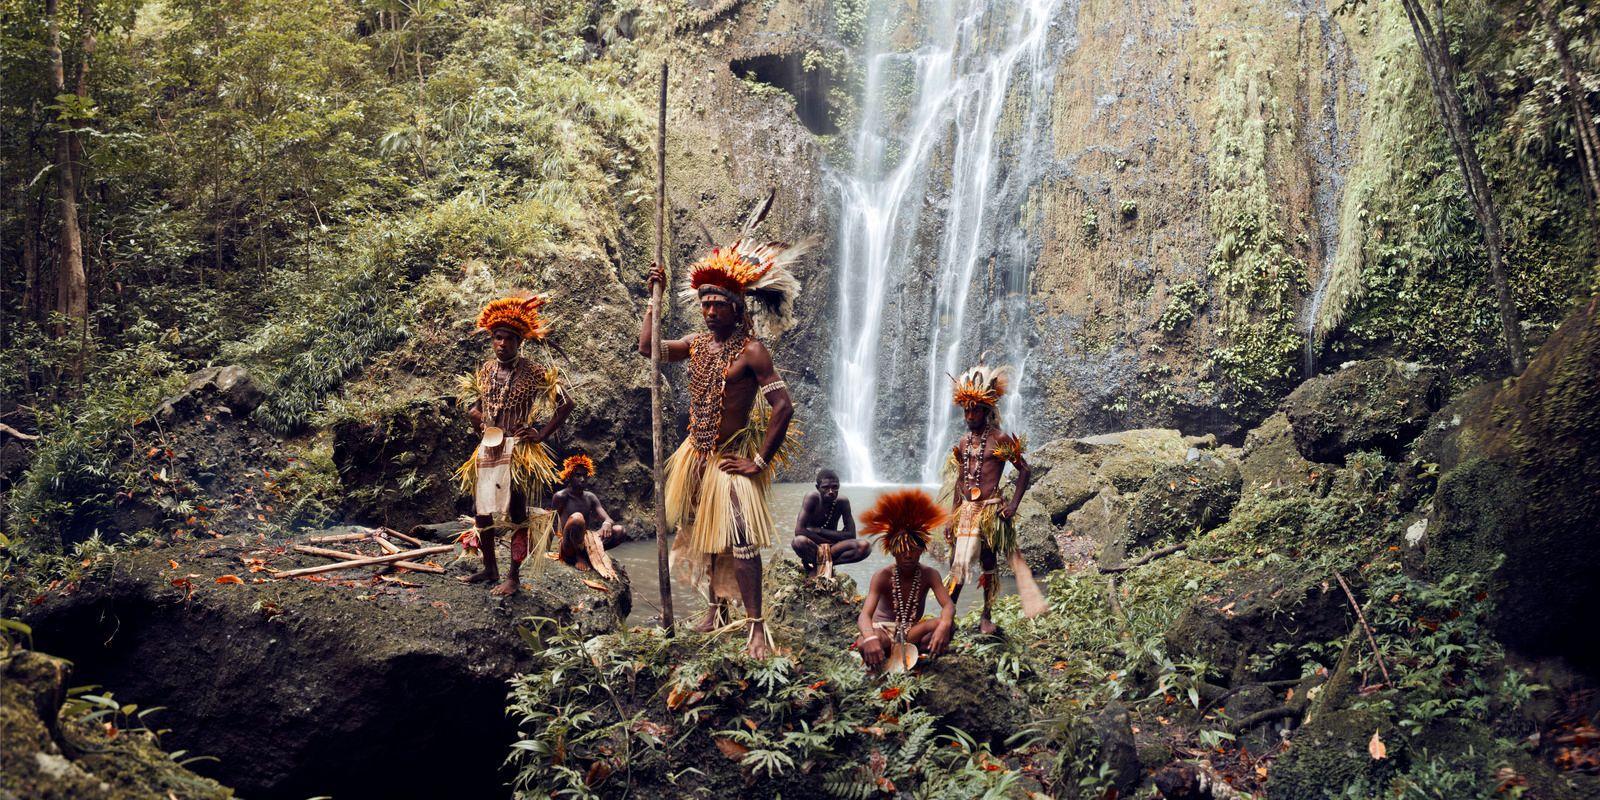 XXXIII 6, Tufi-Wasserfall, Papua, Neuguinea 2017

Die Korafe-Gemeinschaft lebt in der Nähe der Stadt Tufi im Nordosten der Hauptinsel von Papua-Neuguinea. Tufi liegt in der Nähe von Kap Nelson, einer Küstenregion mit tropischen Fjorden. 

Der